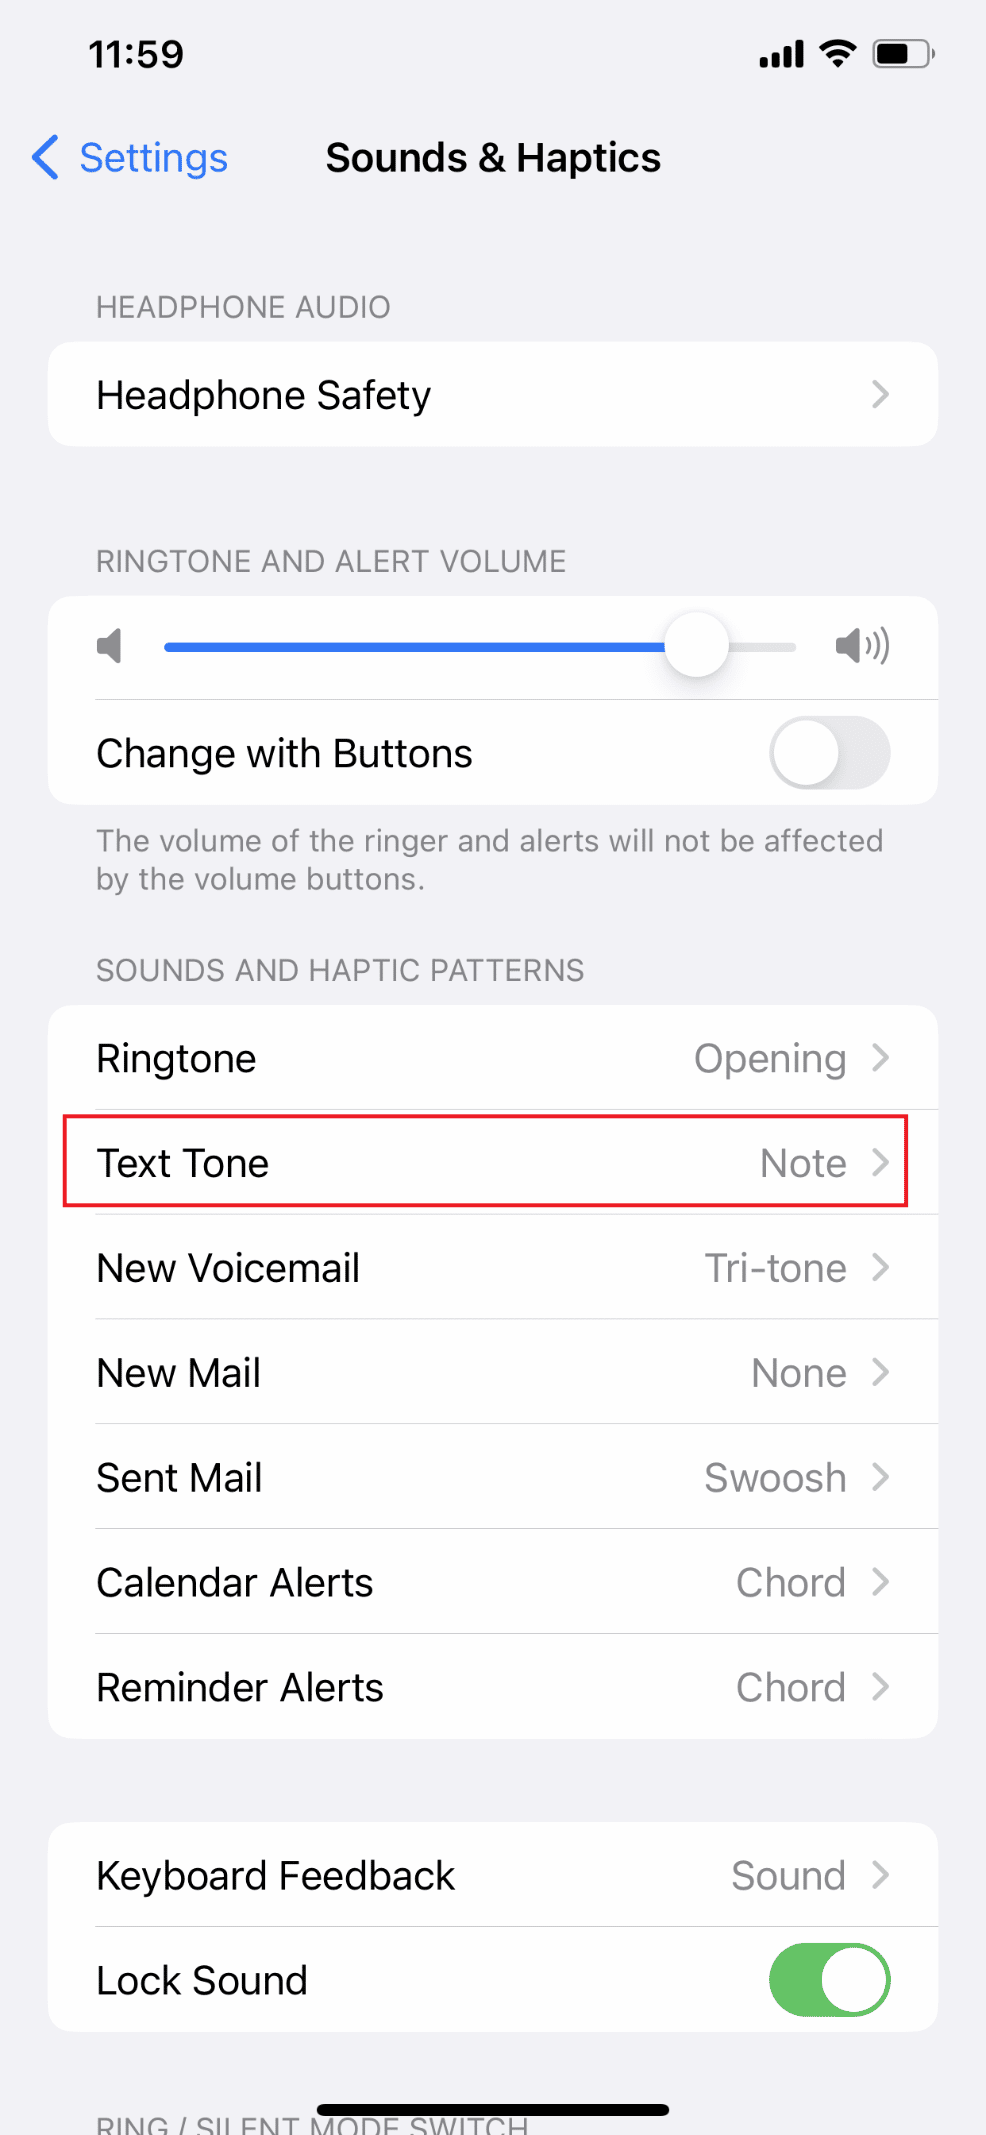 ထို့နောက် Text Tone | ကိုရွေးပါ။ ကျွန်ုပ်၏သတိပေးချက်များသည် အဘယ်ကြောင့် iPhone တွင် အသံမထွက်သနည်း။